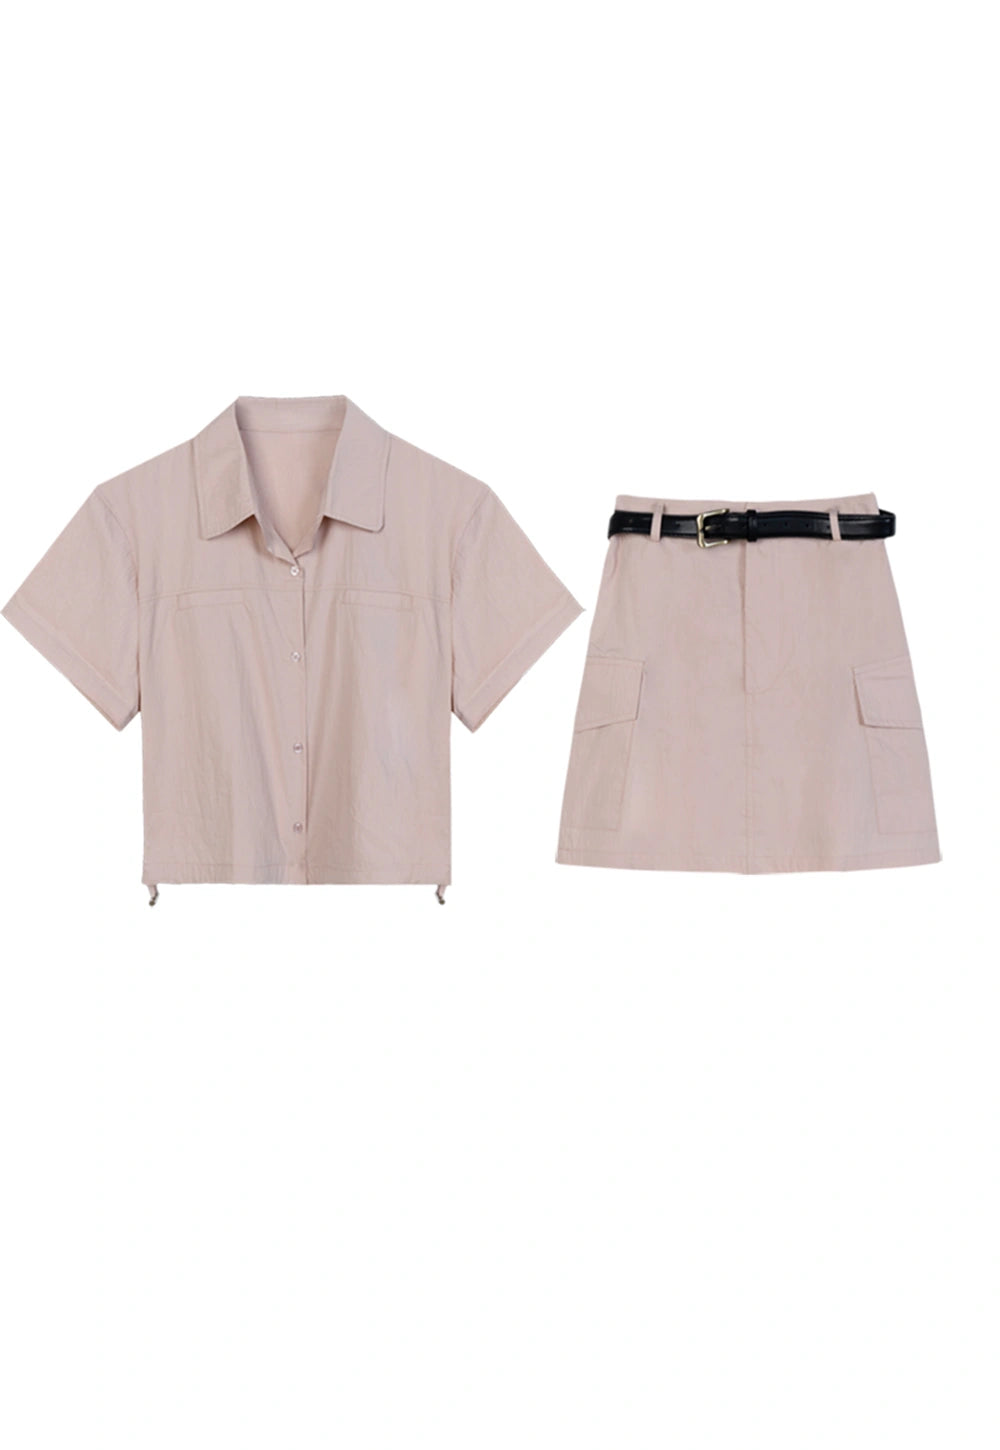 Women's Two-Piece Set: Short Sleeve Shirt and Skirt